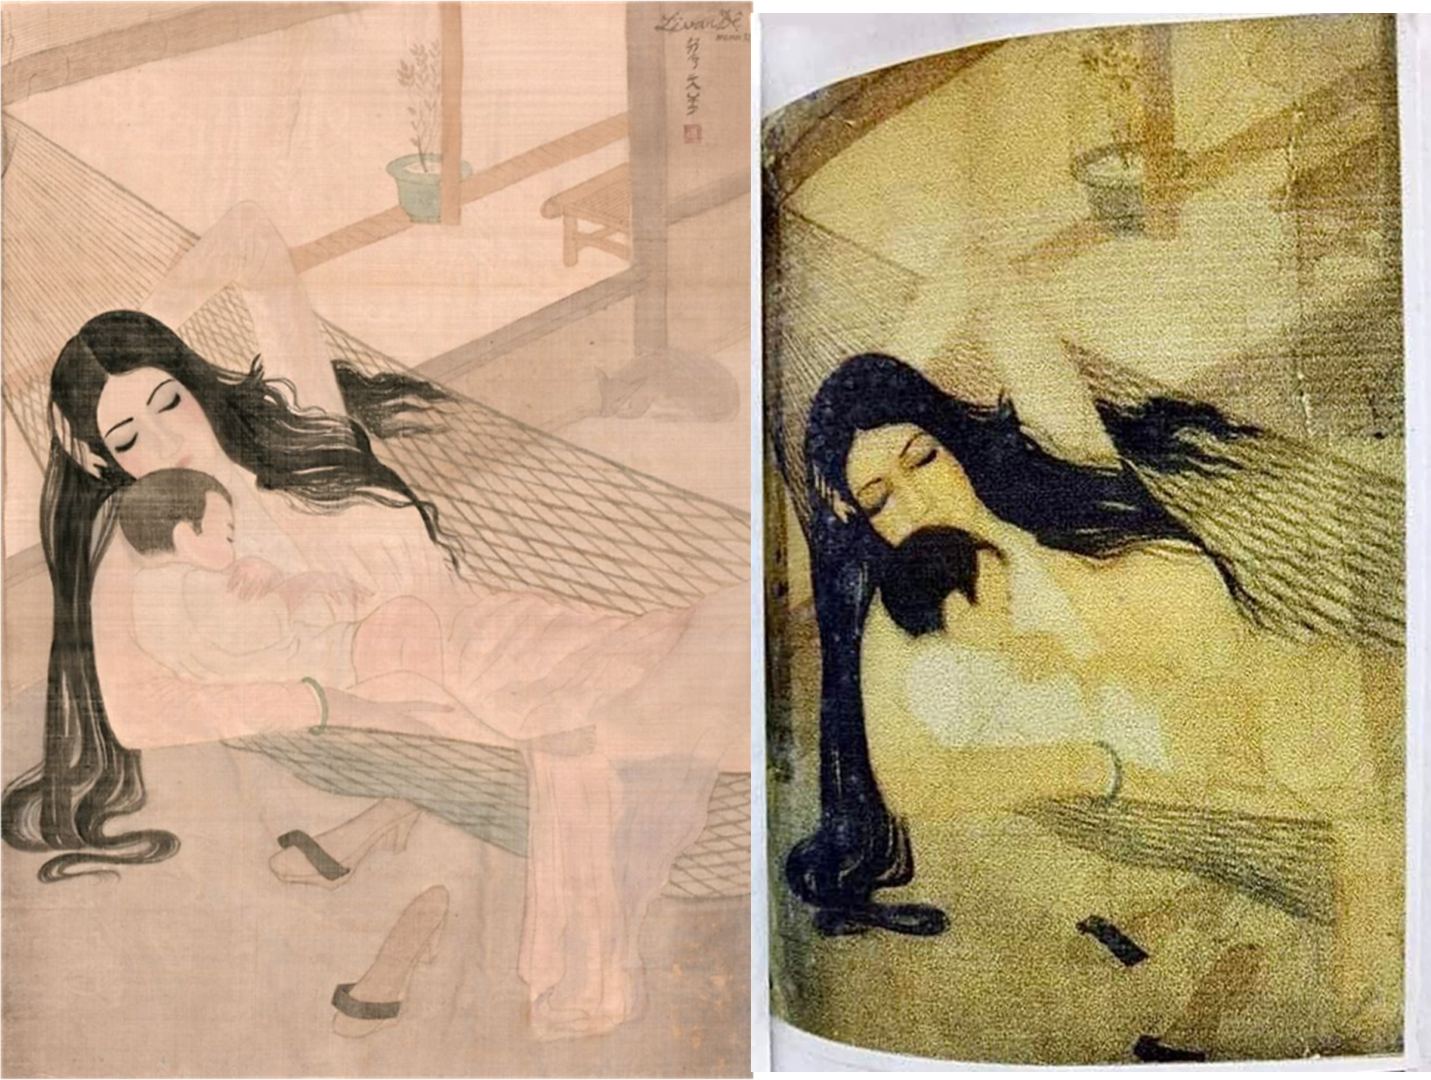 Nhà nghiên cứu mỹ thuật Ngô Kim Khôi cho biết bức Mẹ con (ảnh trái) có khả năng lớn sao chép từ tranh Nắng hè (ảnh phải) của danh hoạ Lê Văn Đệ